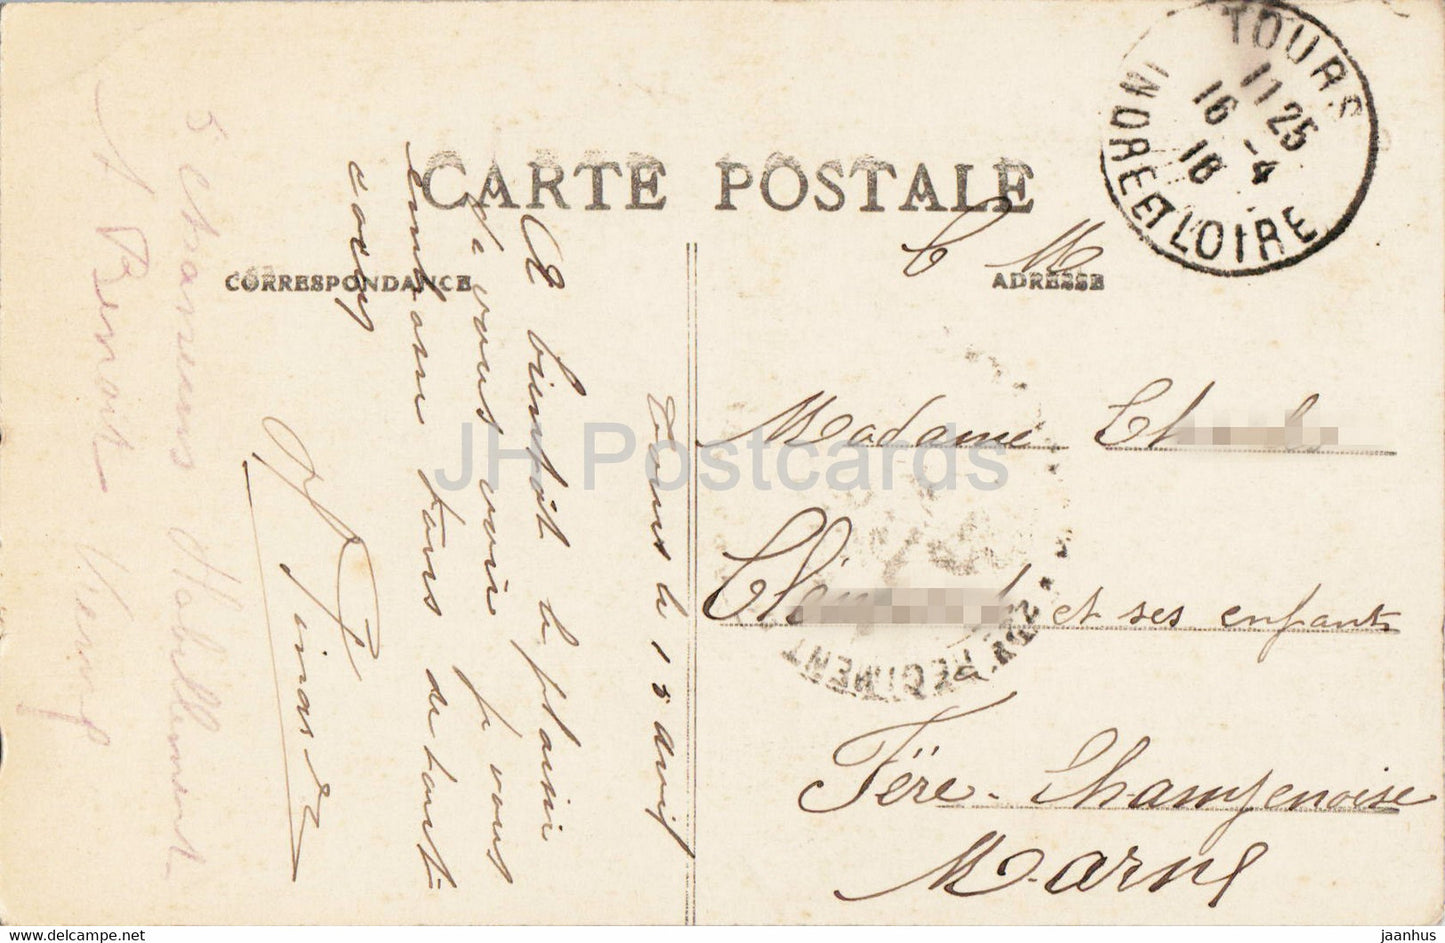 Tours - L'Hotel de Ville et la Place - Cote Sud Ouest - 24 - old postcard - 1916 - France - used